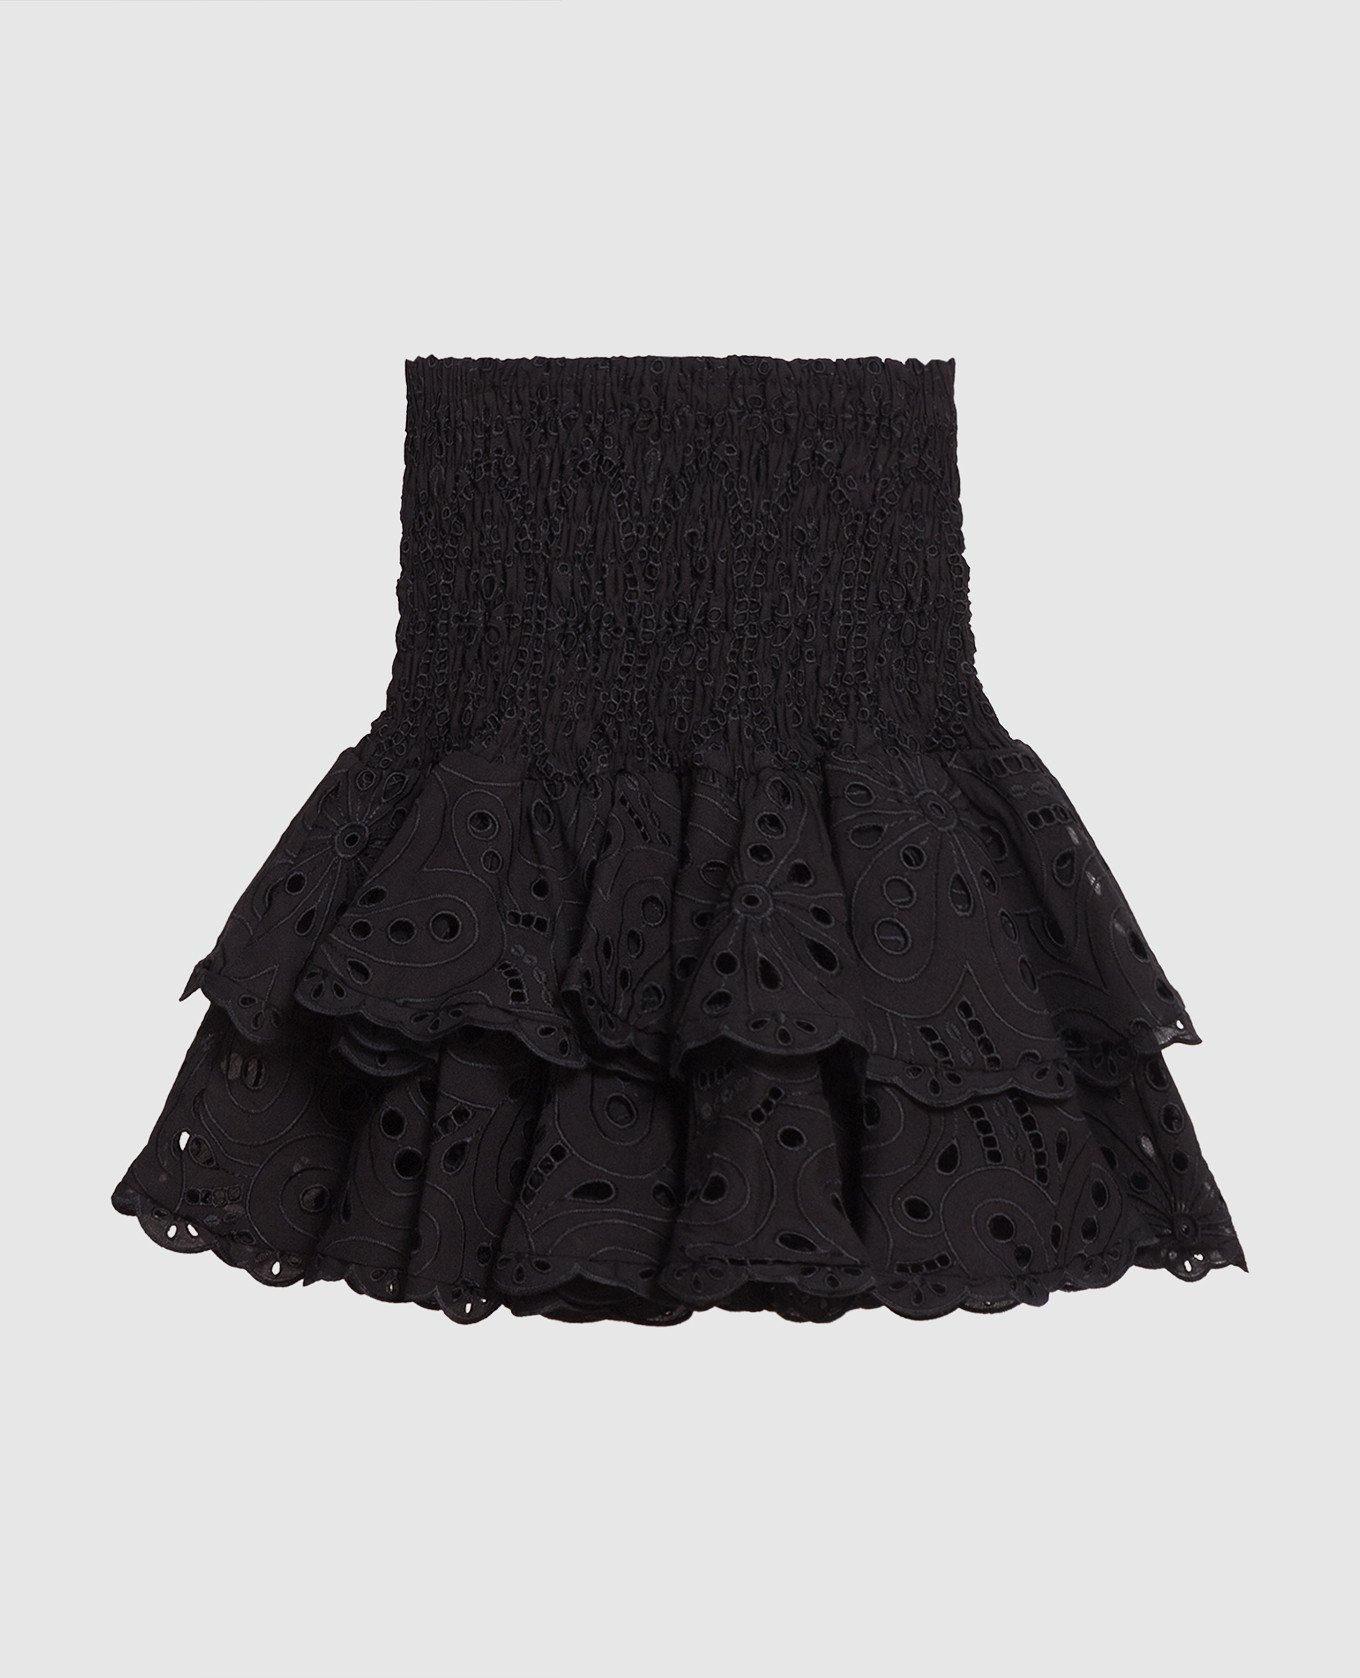 Черная юбка Noa с вышивкой бродер.